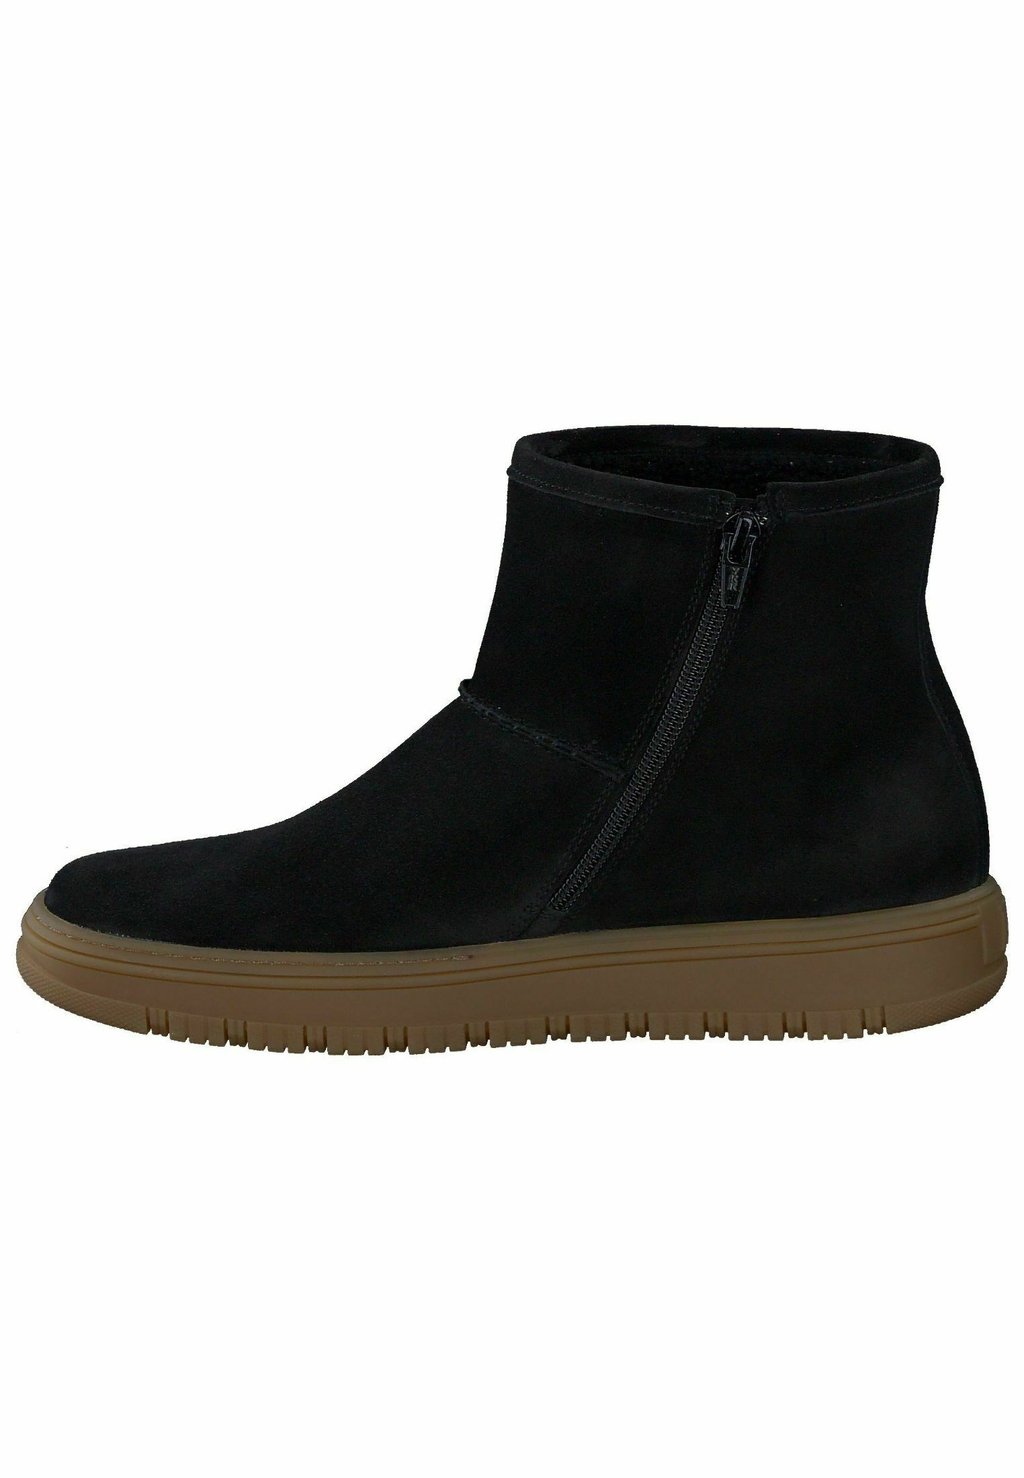 Зимние ботинки Paul Green, мягкая замша черного цвета